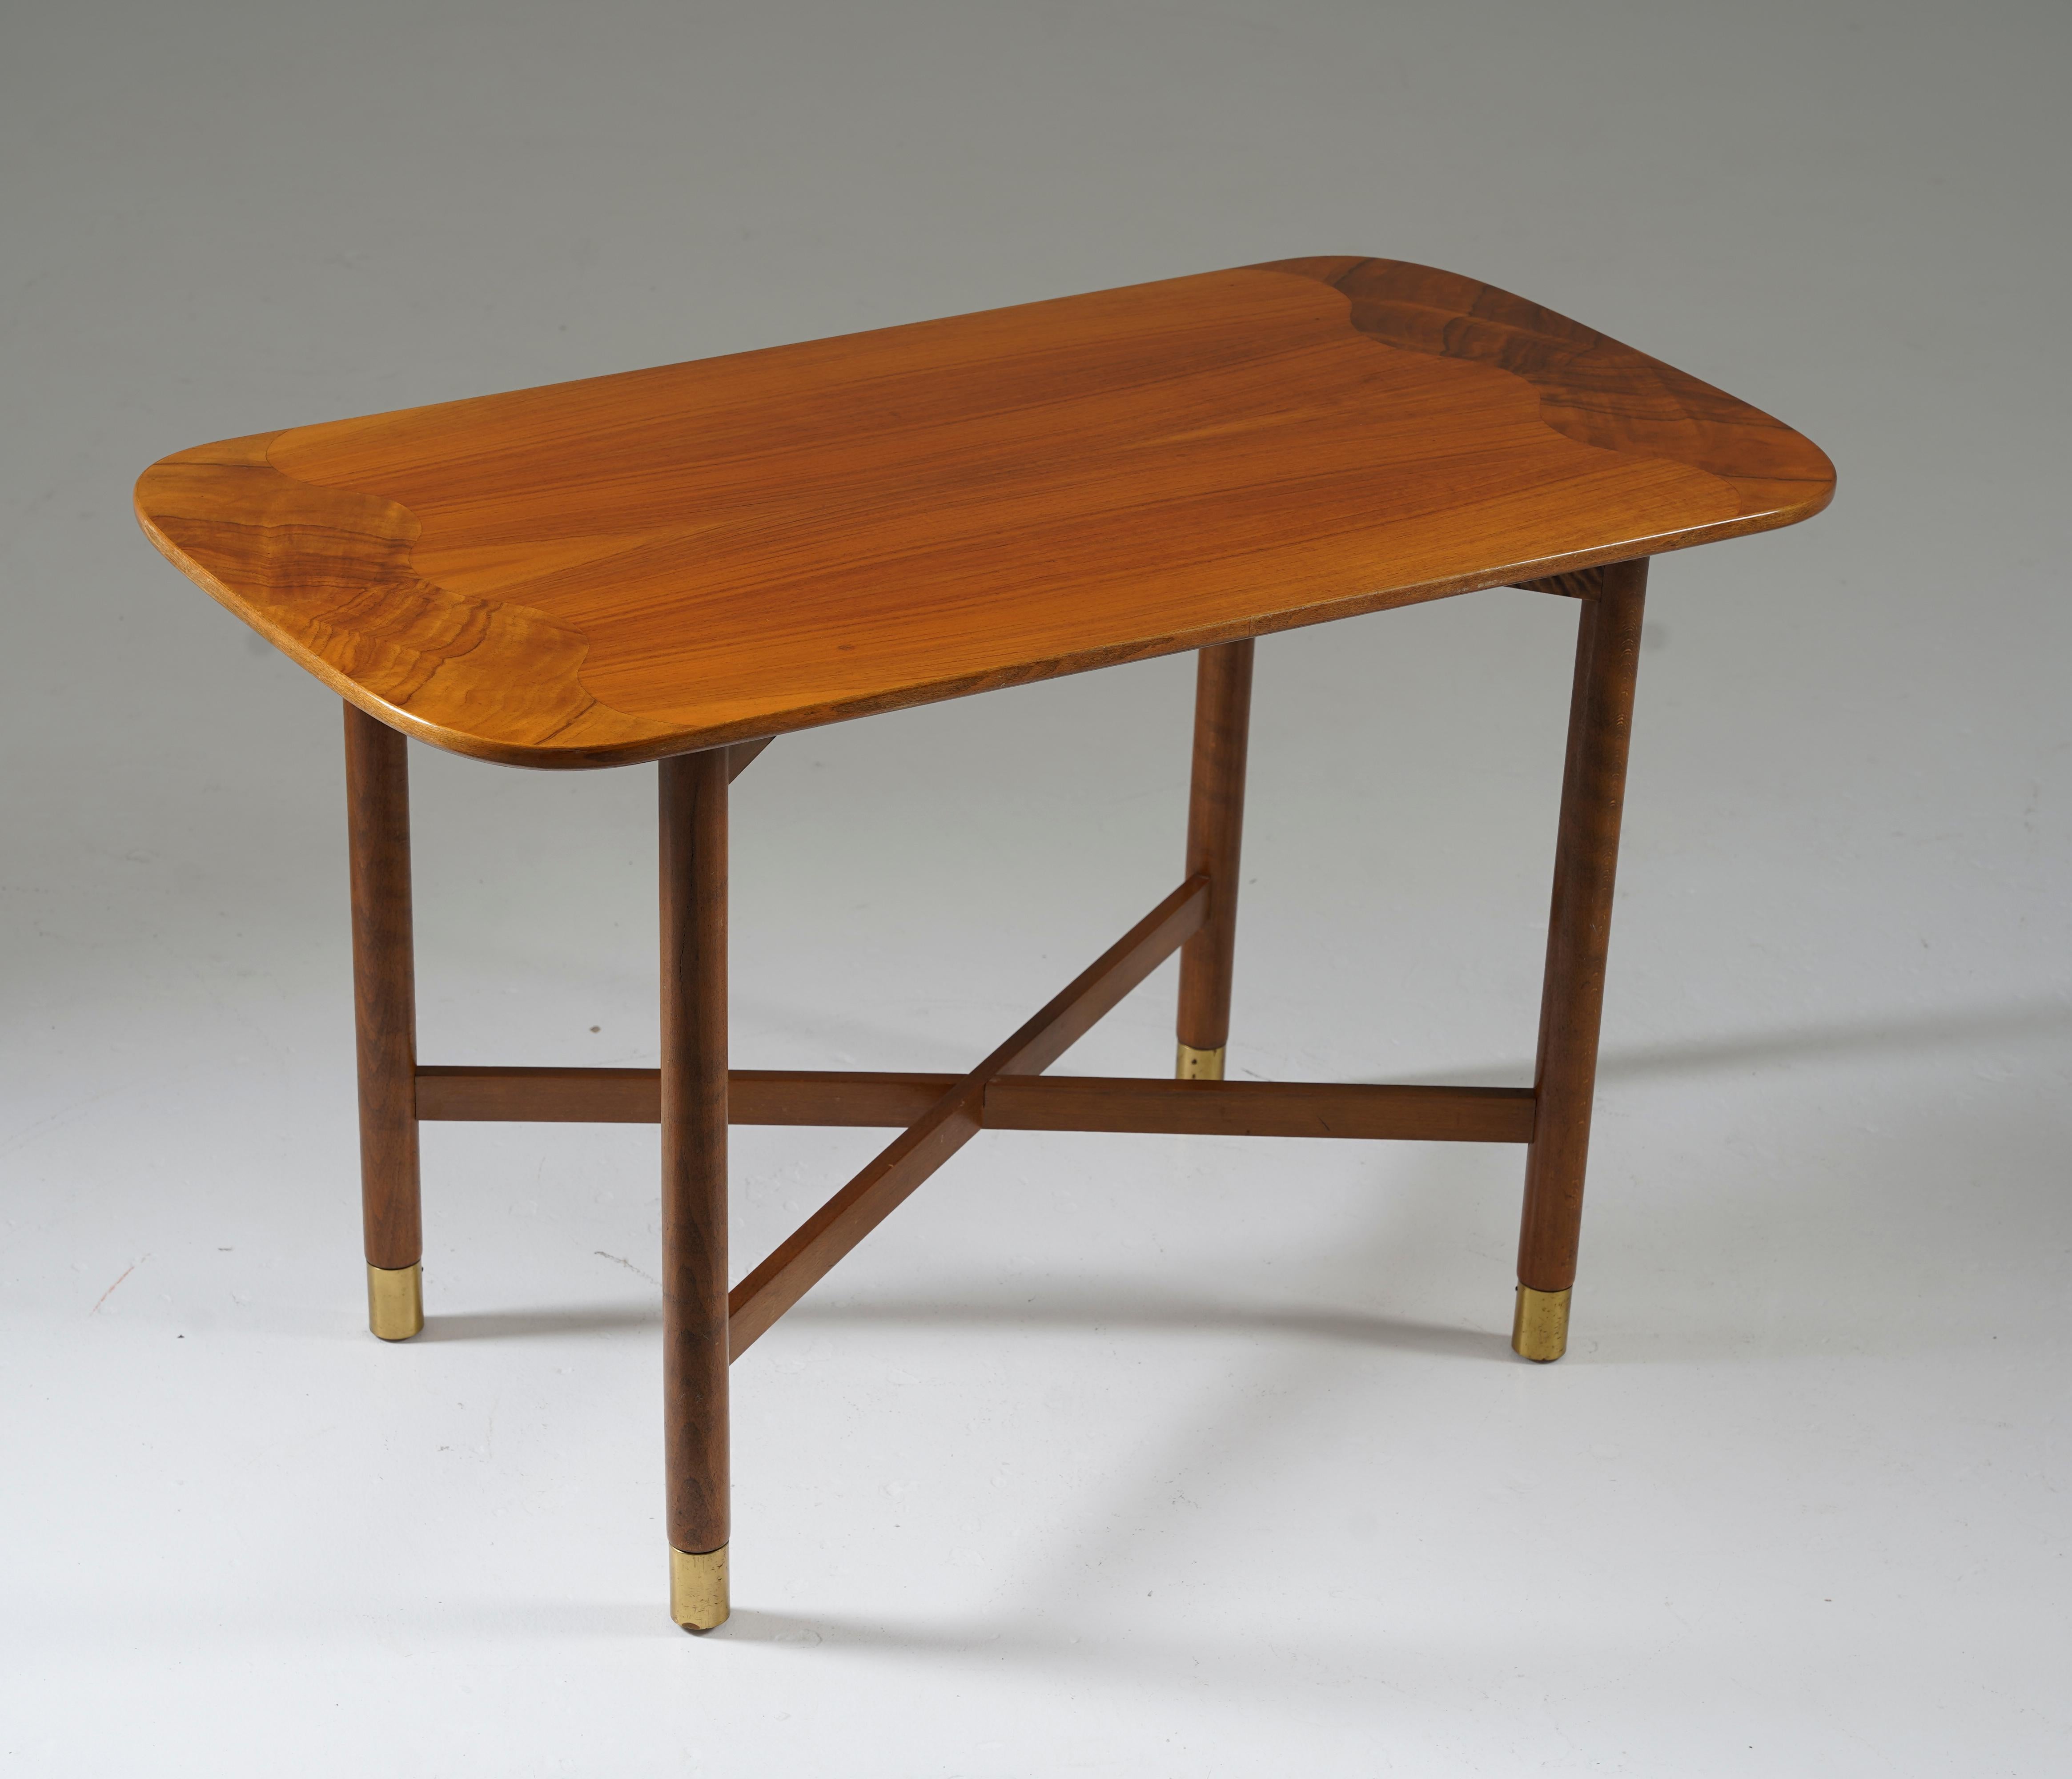 Table d'appoint ou table basse moderne suédoise, années 1940. 
Cette table offre un design très épuré et une superbe qualité de fabrication, significative pour l'époque. Les incrustations en forme de vagues et les détails en laiton ajoutent de